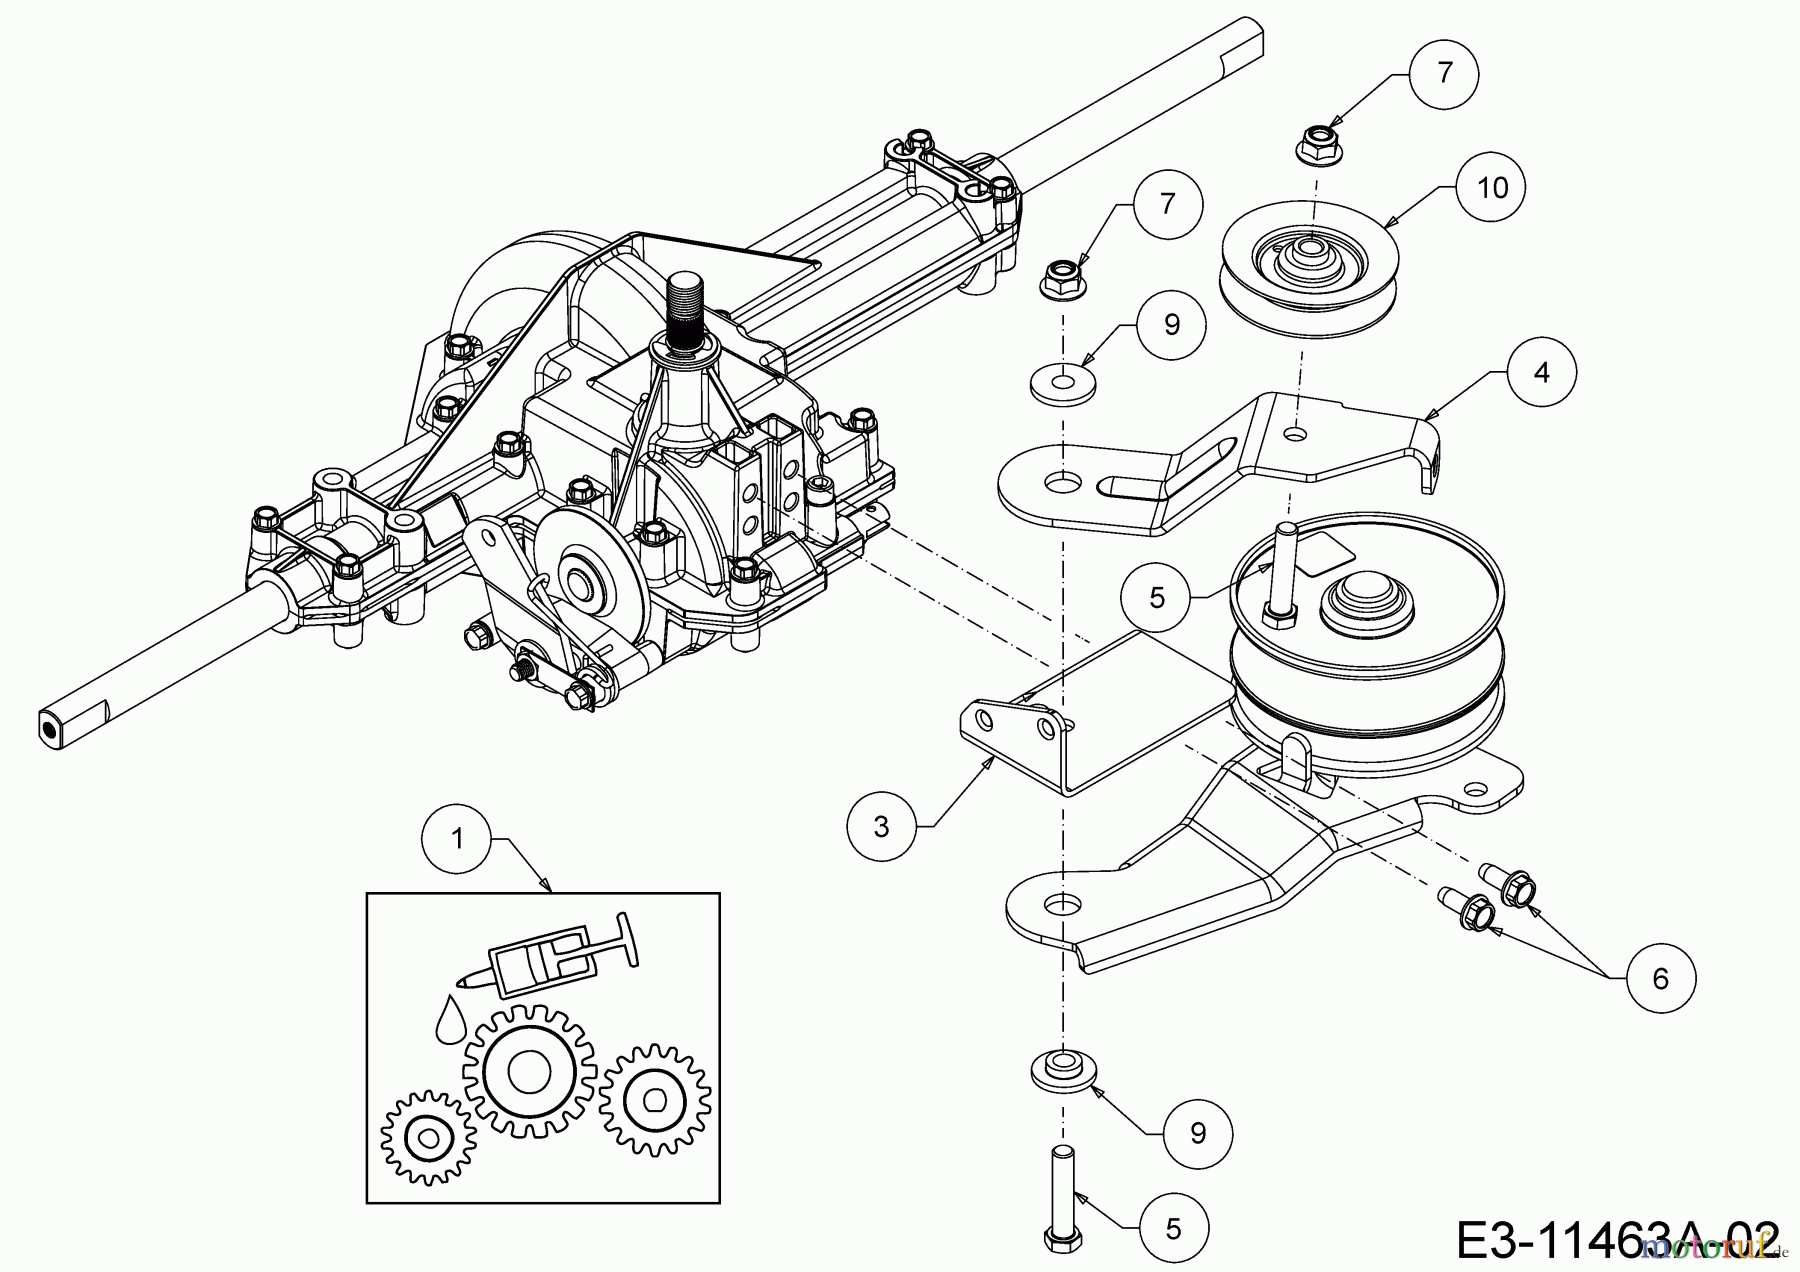  Mastercut Lawn tractors Mastercut 96 13A7765F659  (2020) Idle pullie gearbox